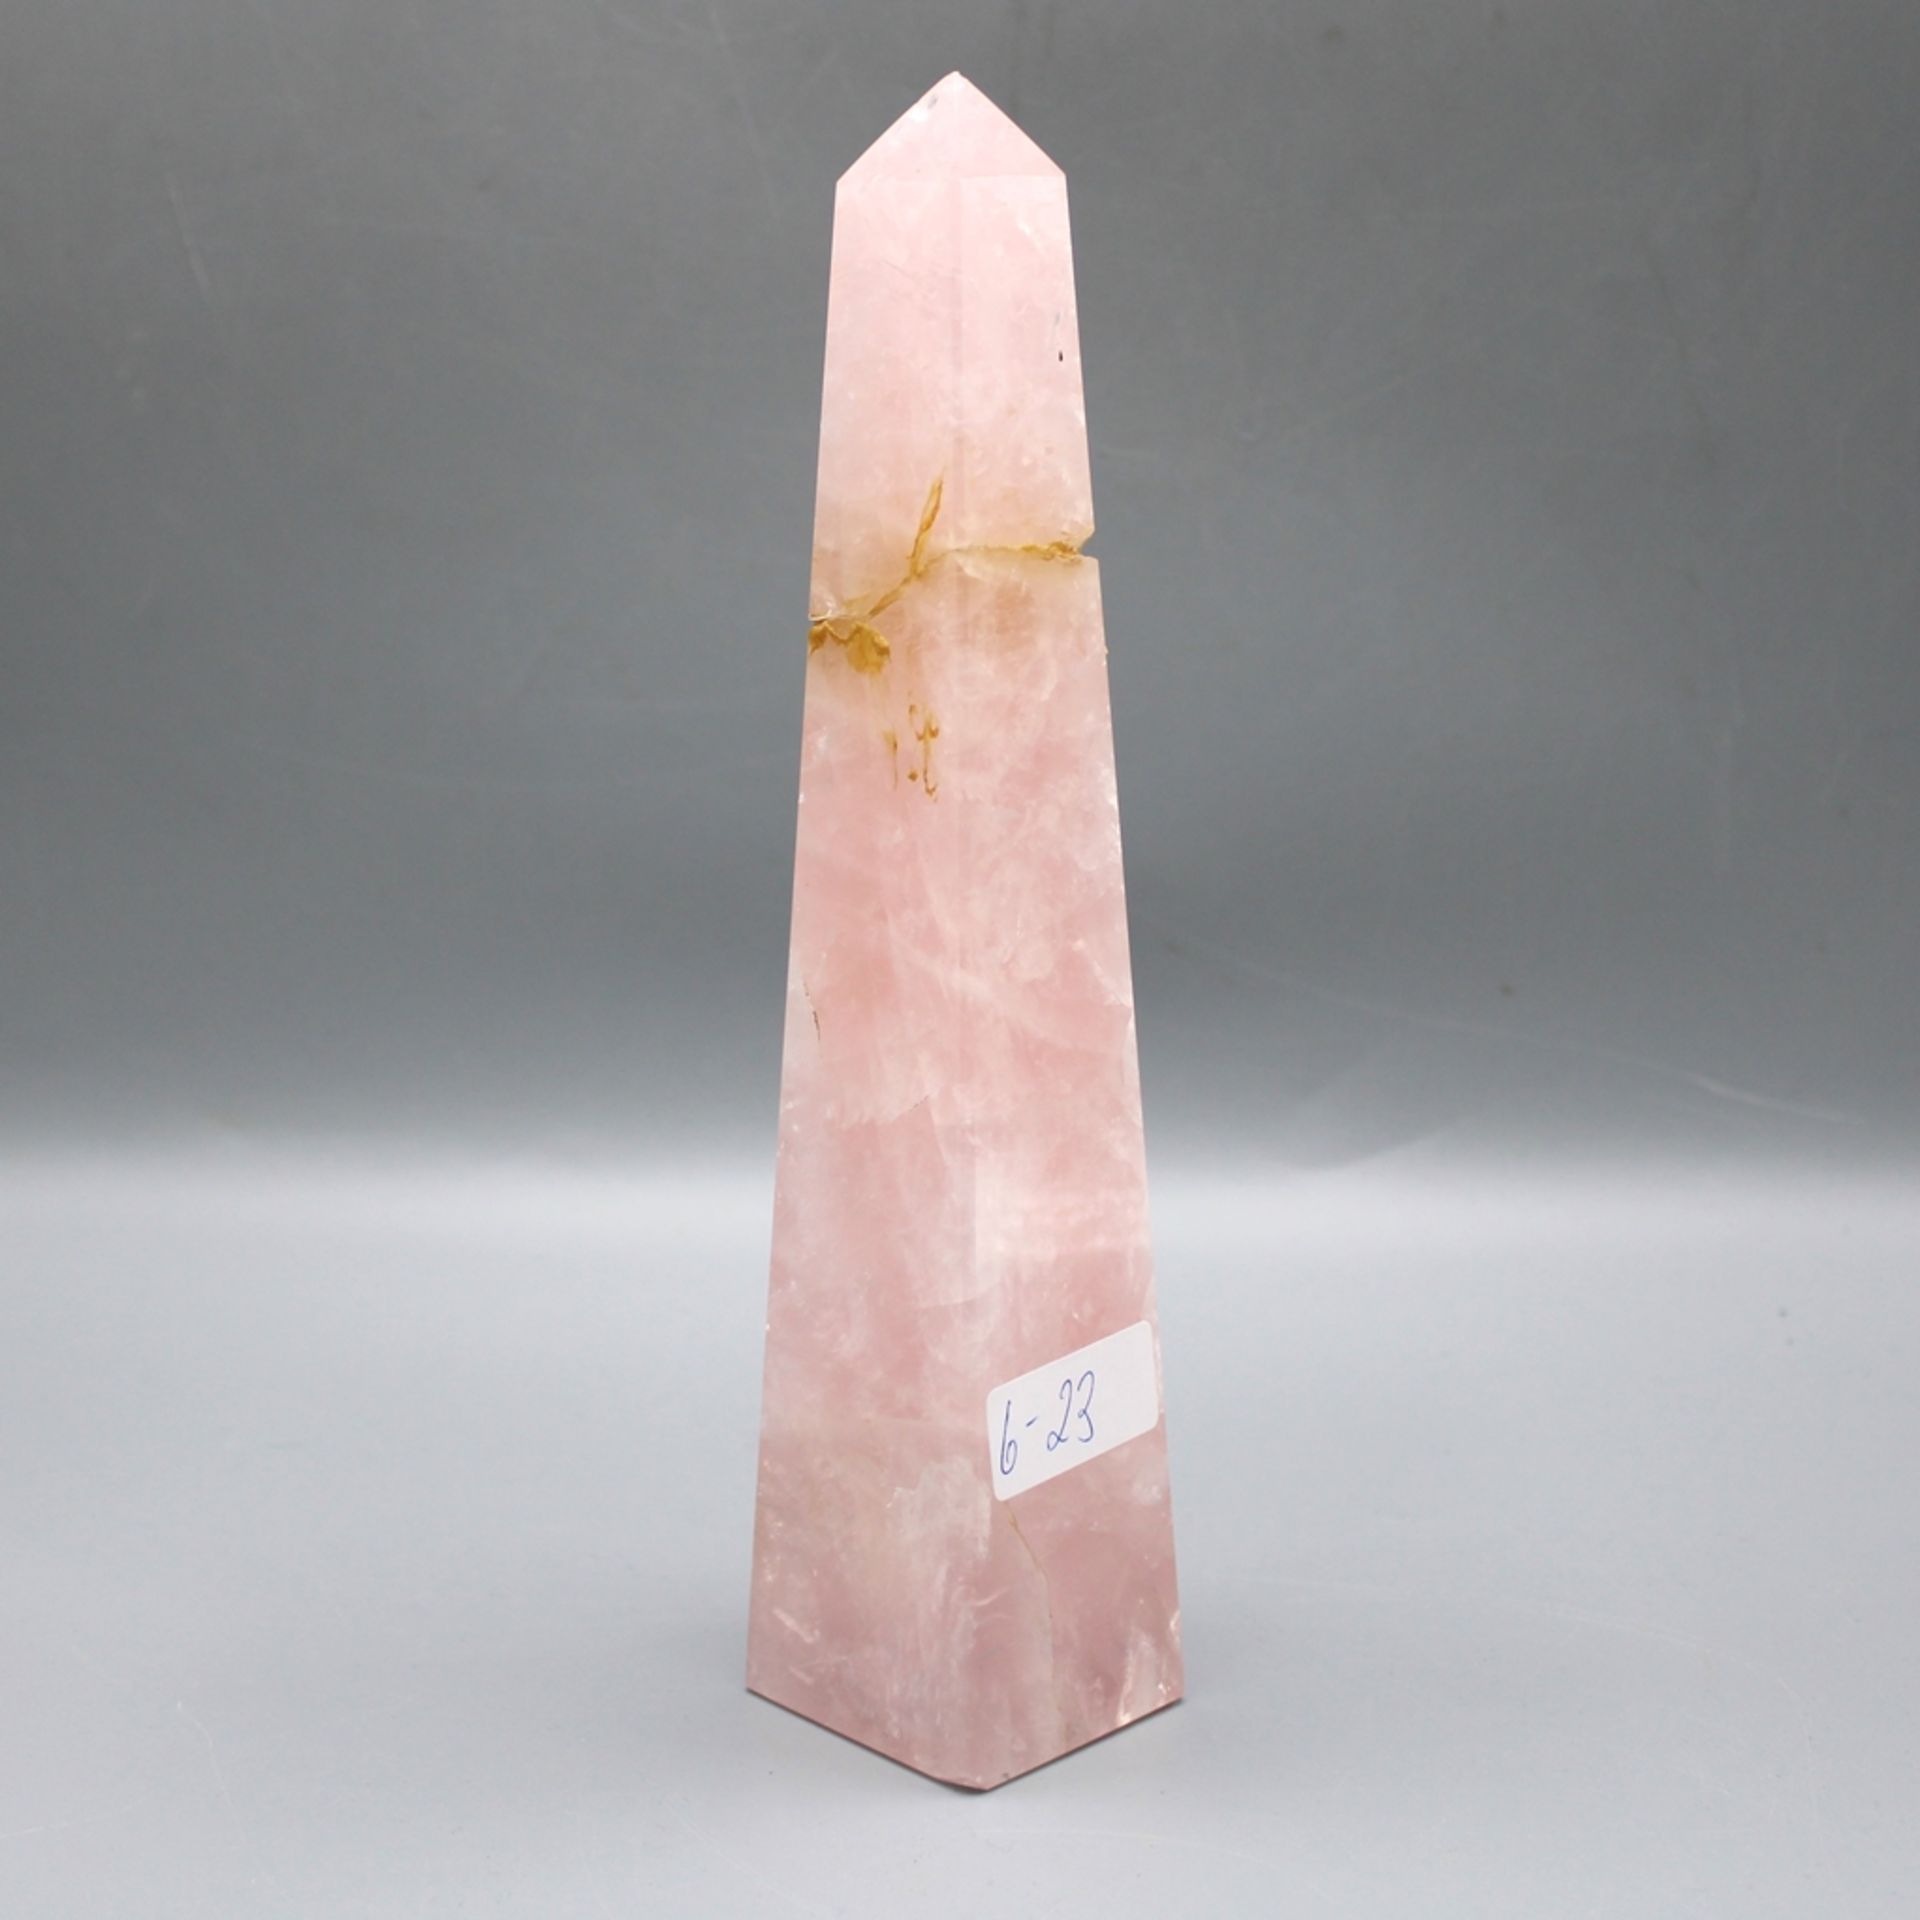 Rosenquarz Obelisk ca. 24 cm 843 g, Spitze abgebrochen geklebt